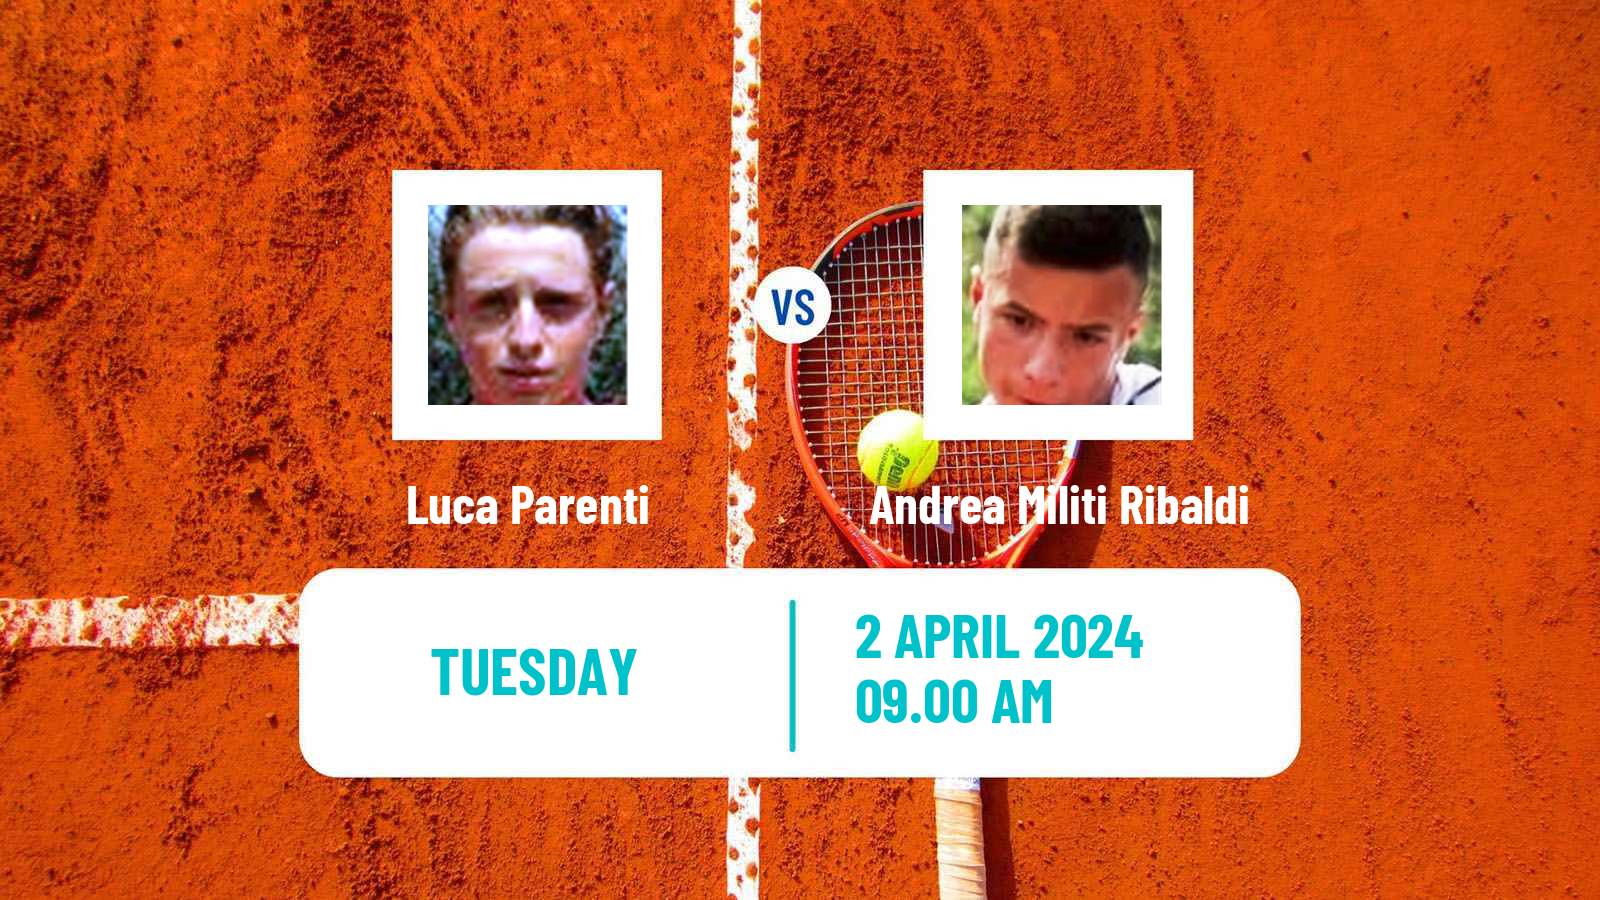 Tennis ITF M25 Santa Margherita Di Pula 2 Men Luca Parenti - Andrea Militi Ribaldi